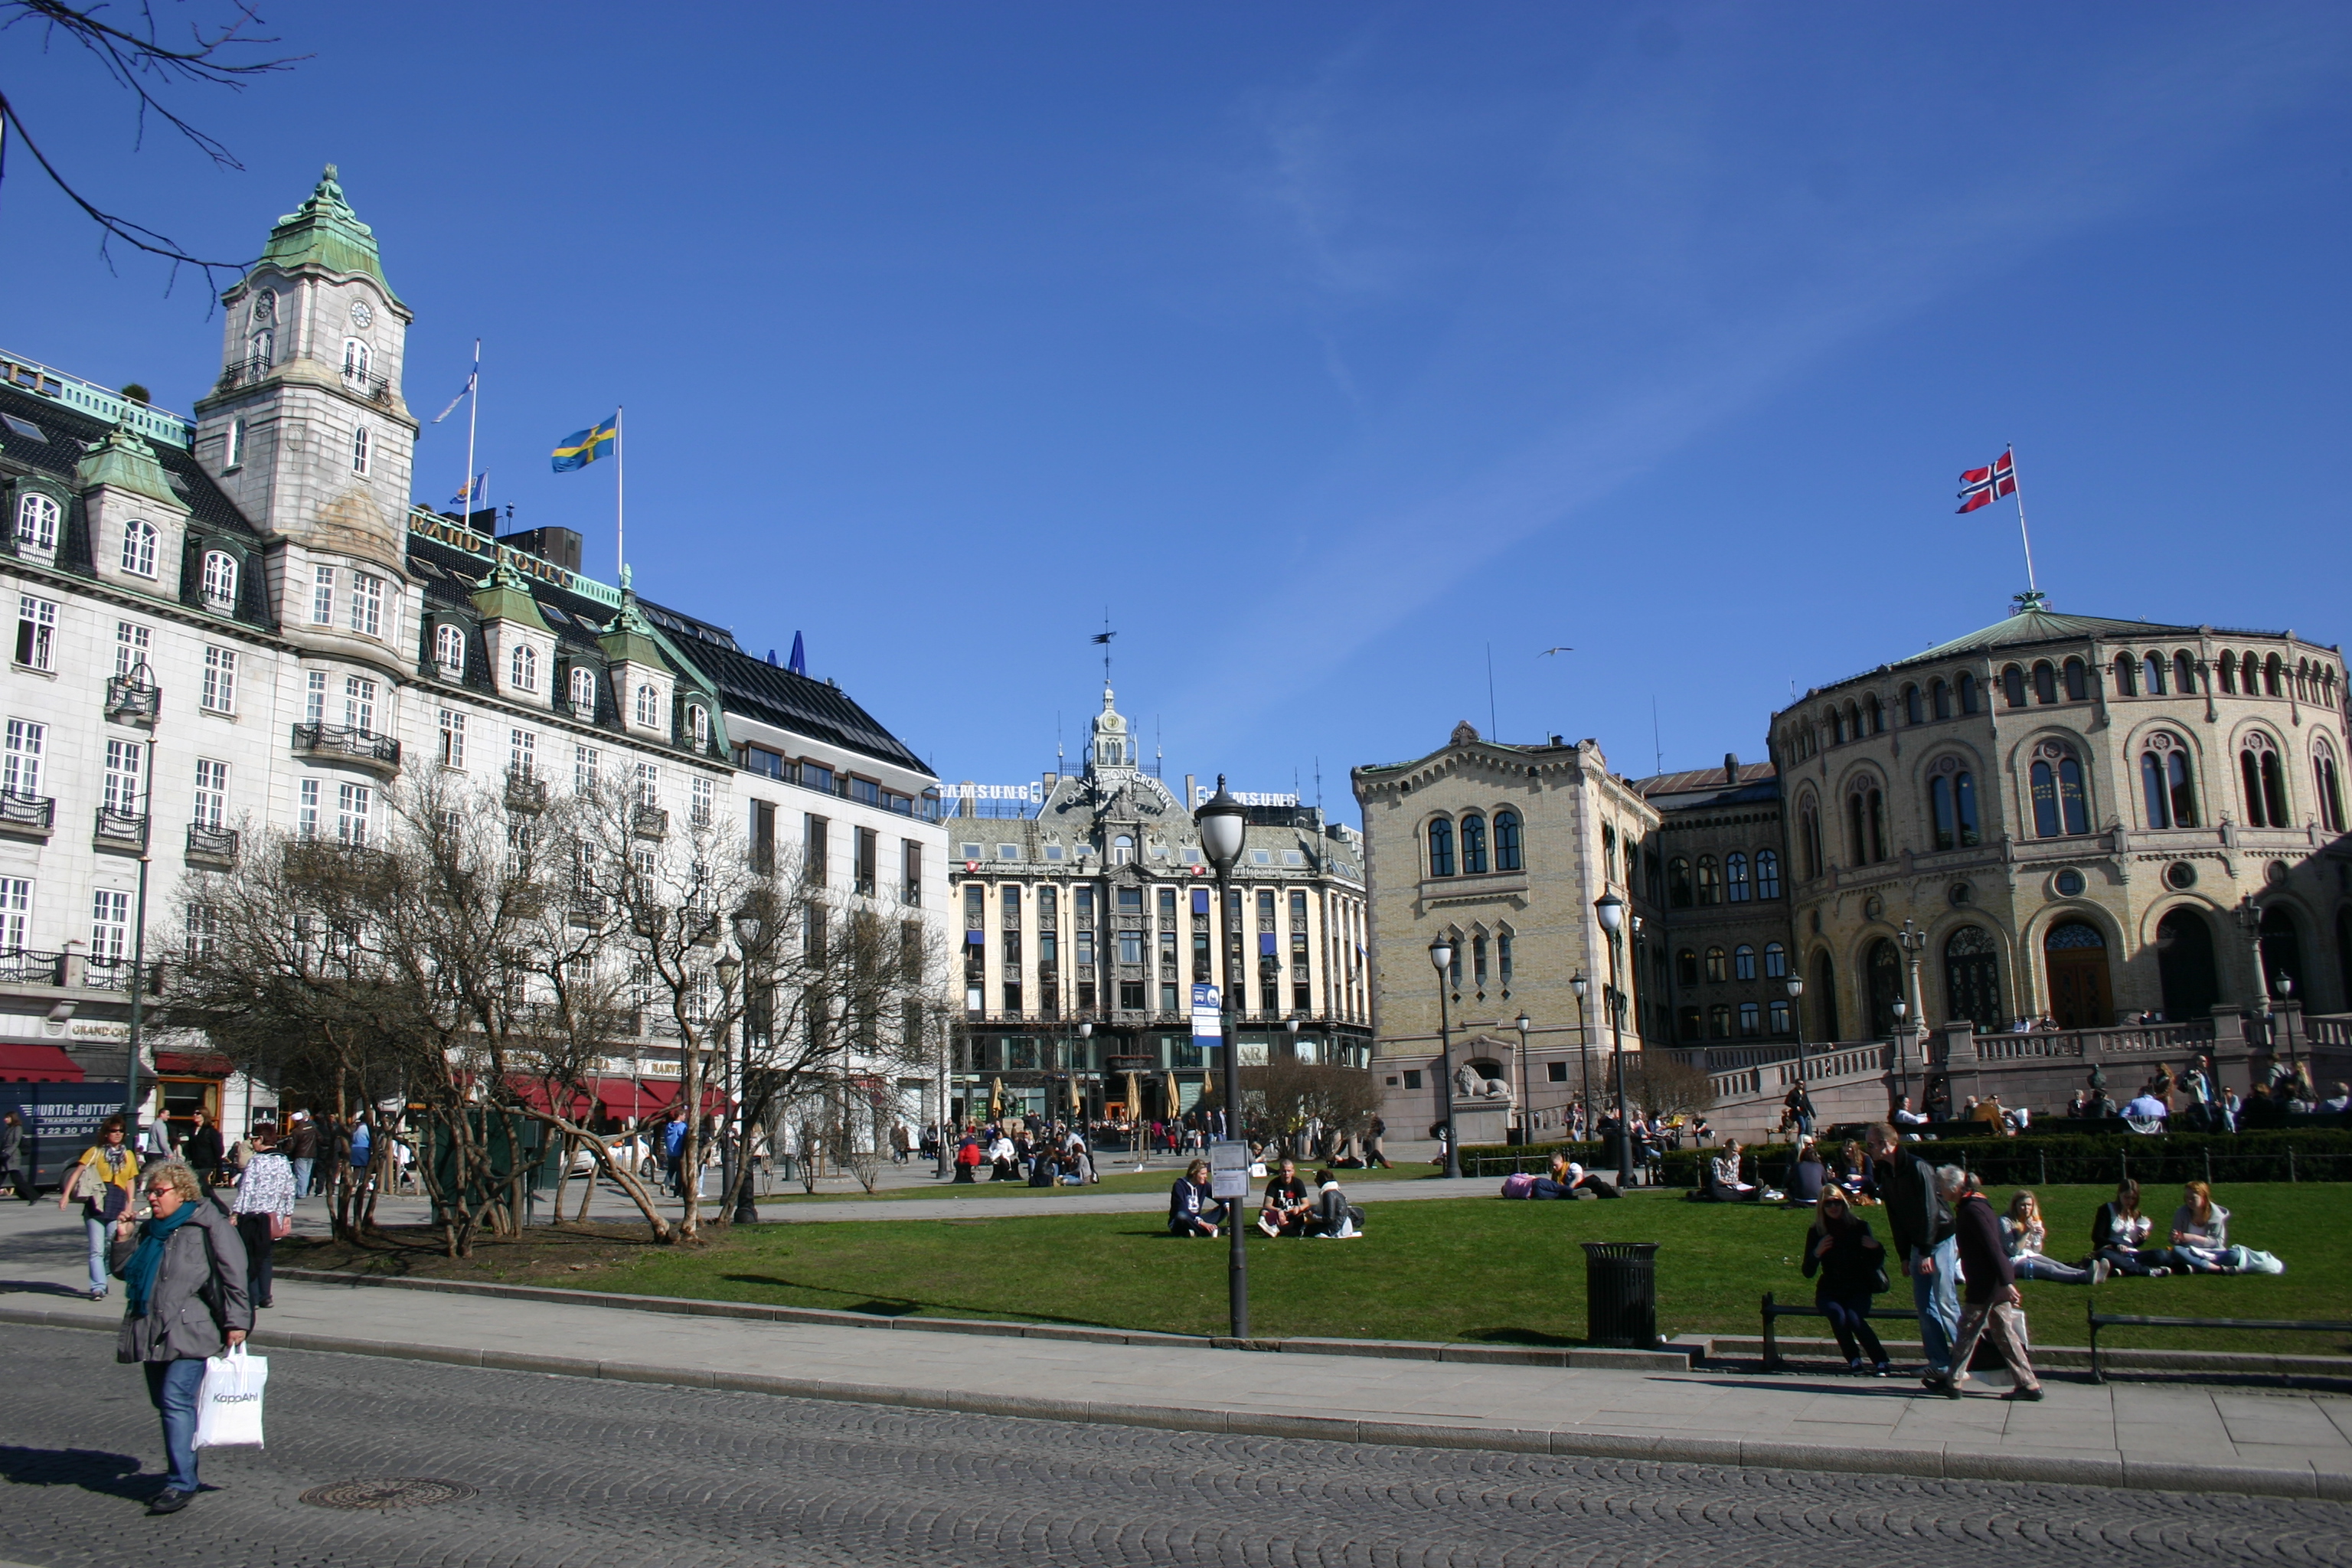 Oslo: Im Grand Hotel übernachten traditionell die Friedensnobelpreisträger, rechts wehen über dem Parlament die Farben Norwegens